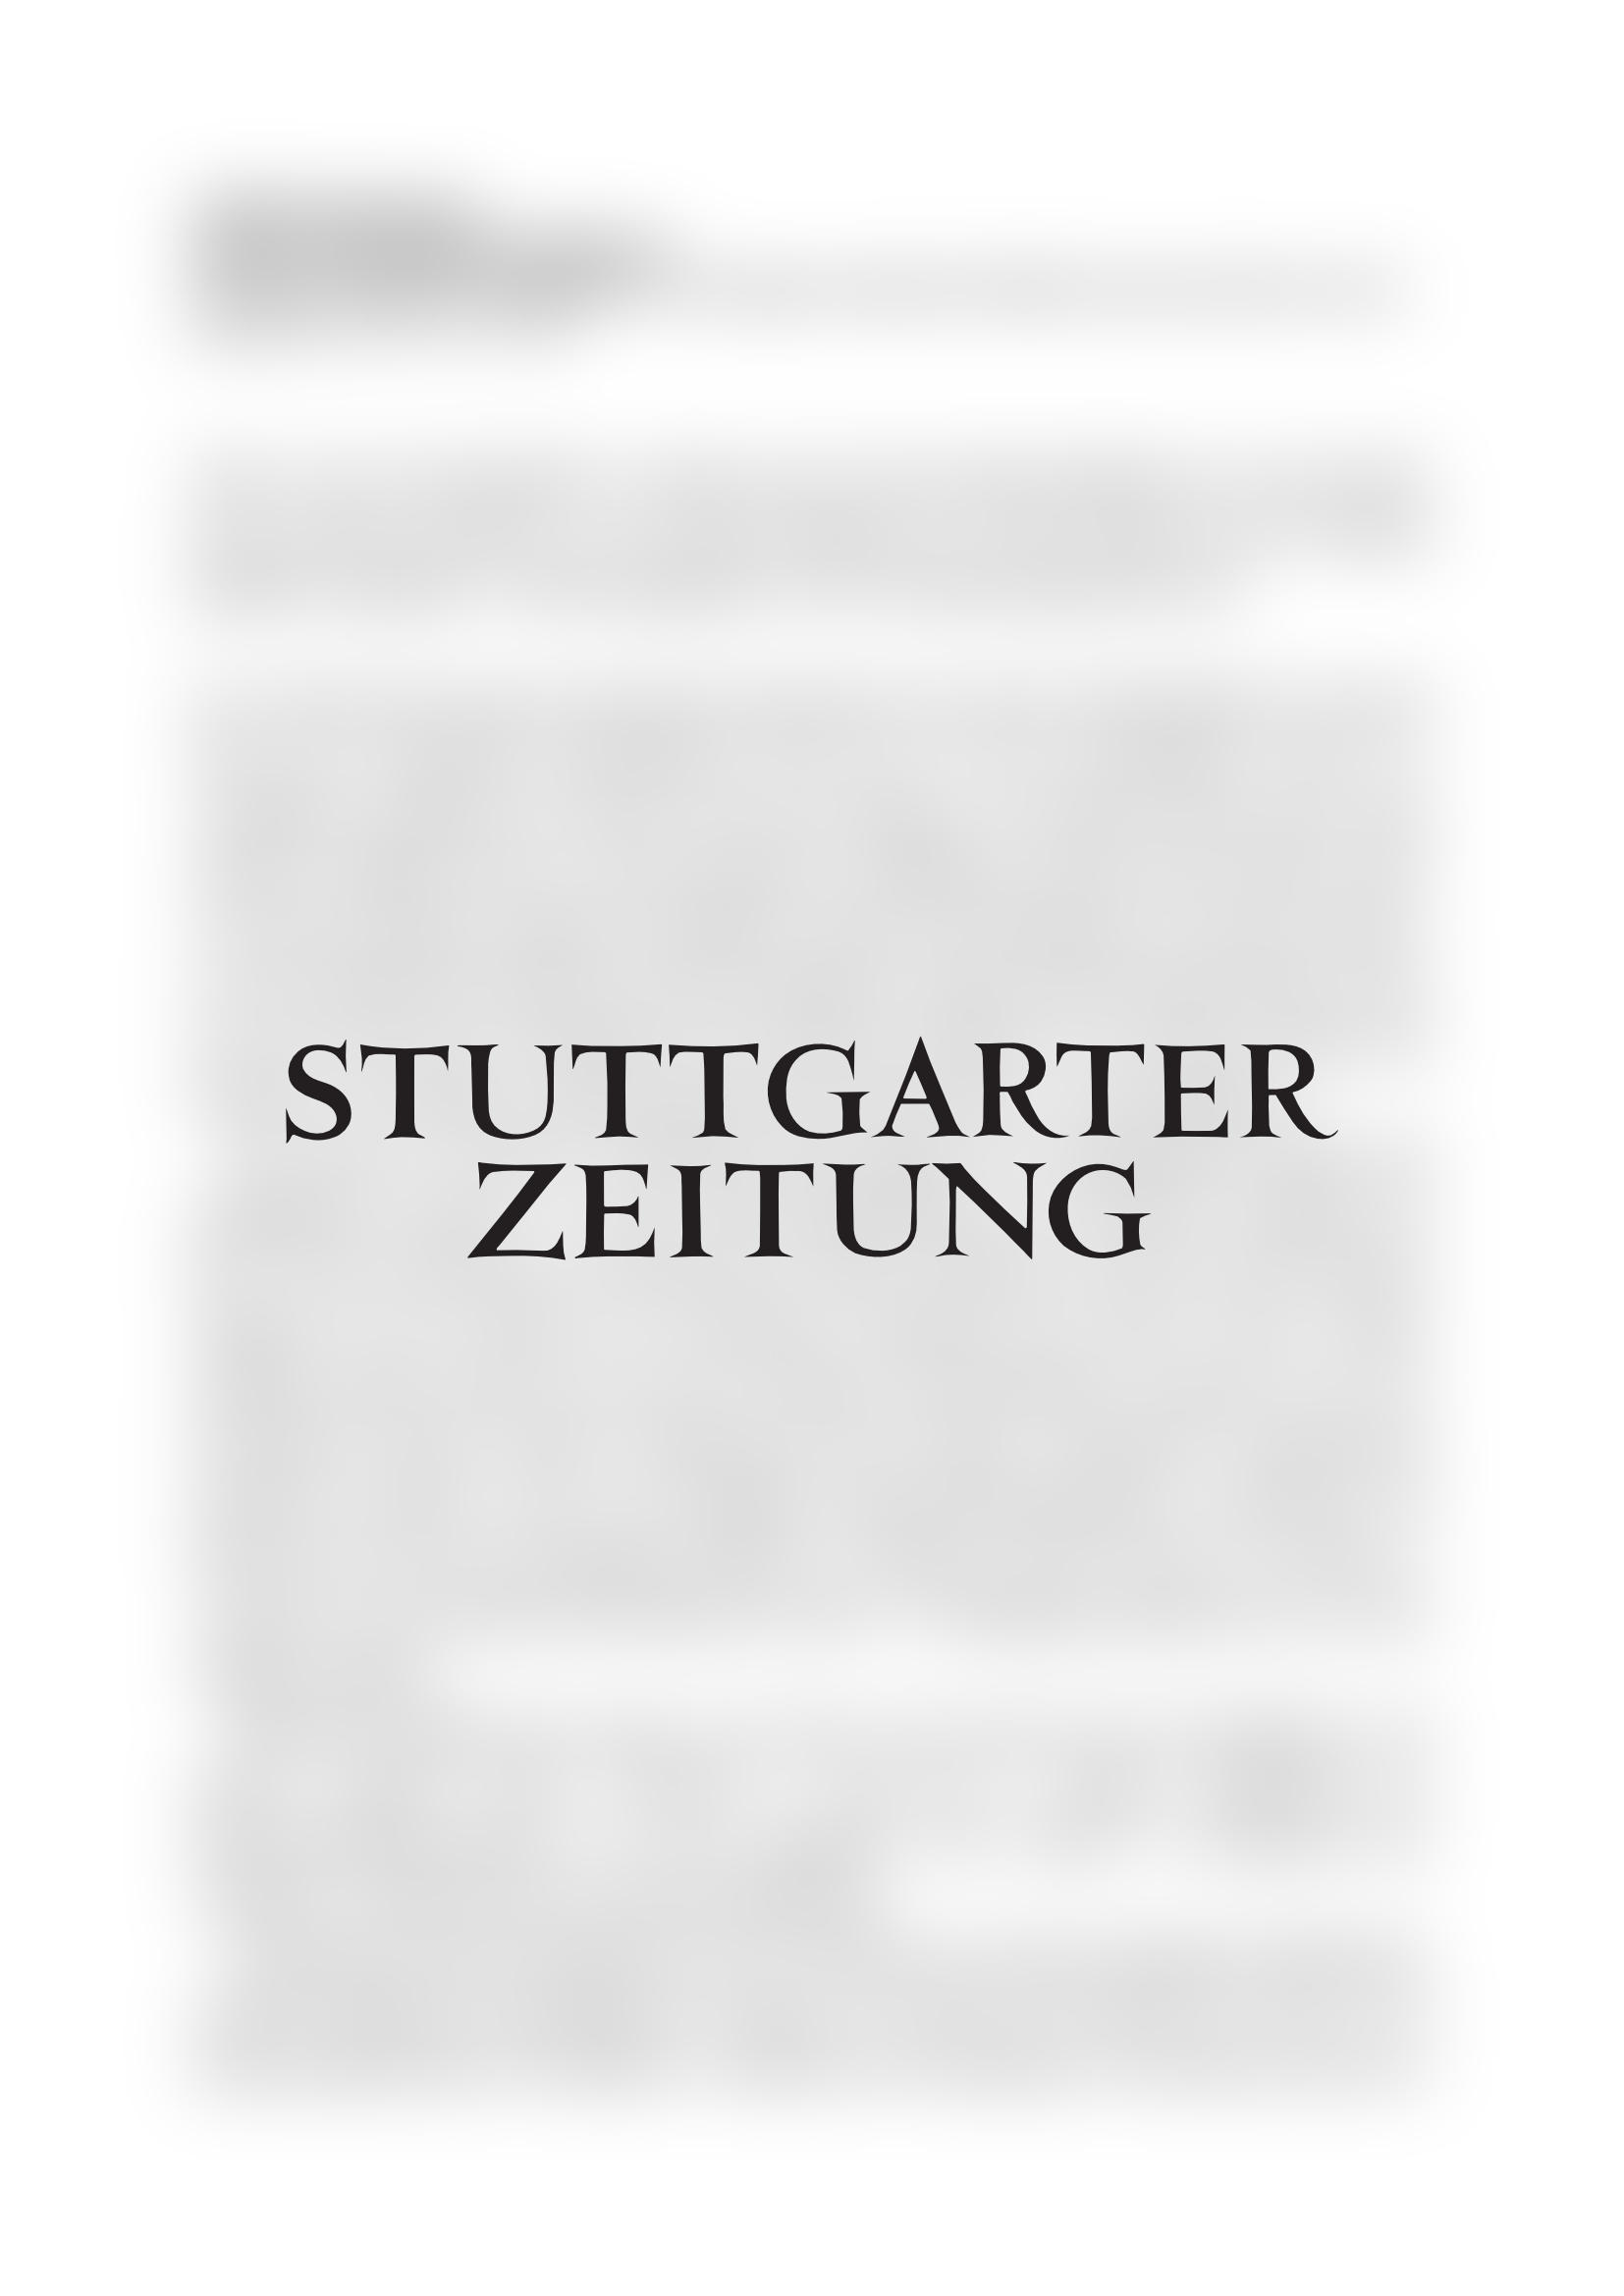 Vorschau - Stuttgarter Zeitung